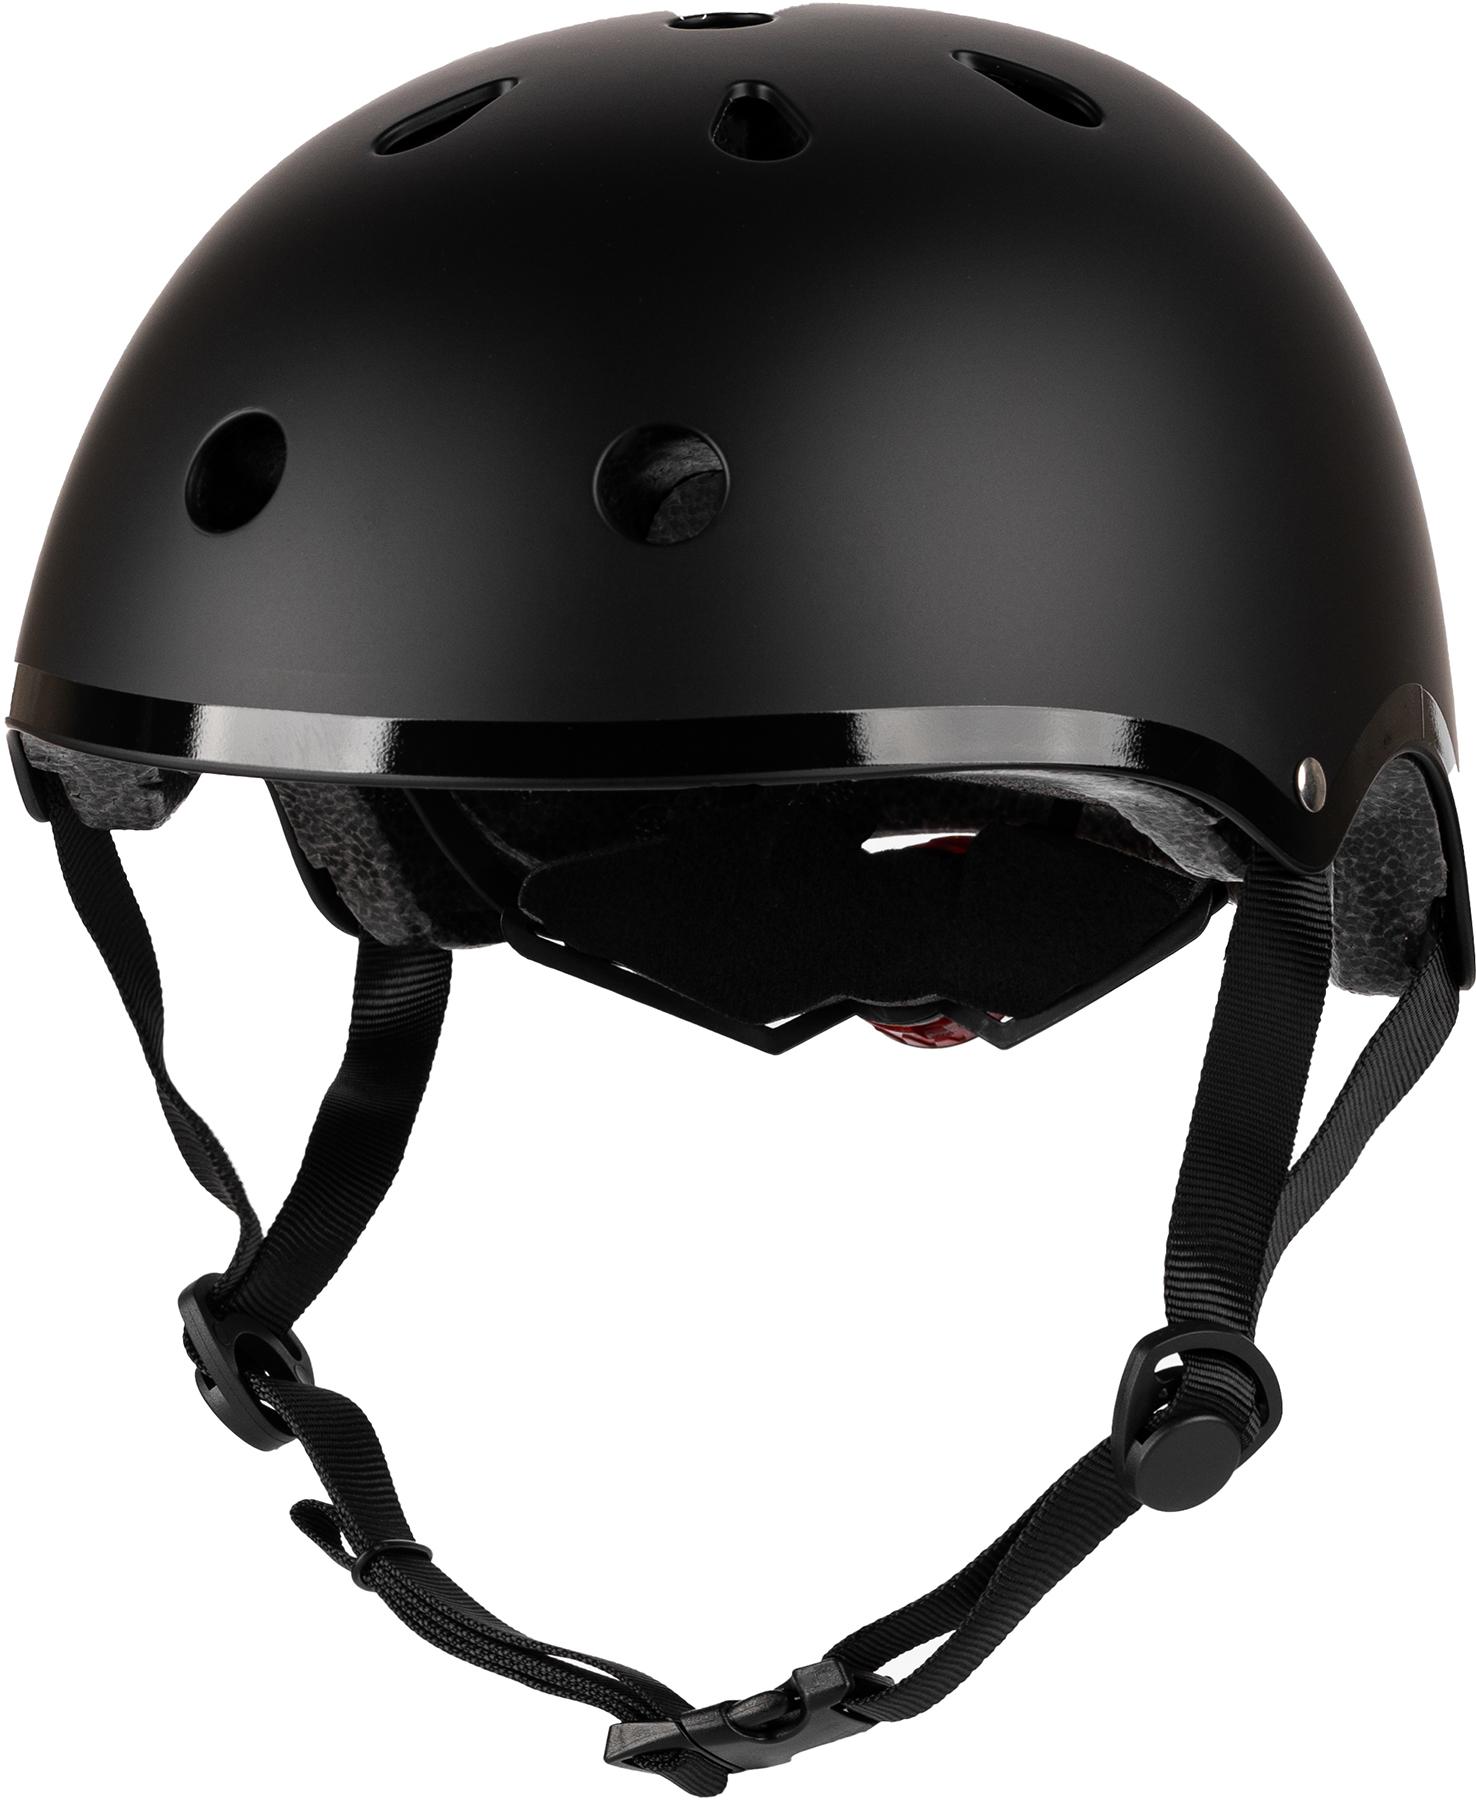 Hornit Kids Helmet - Black